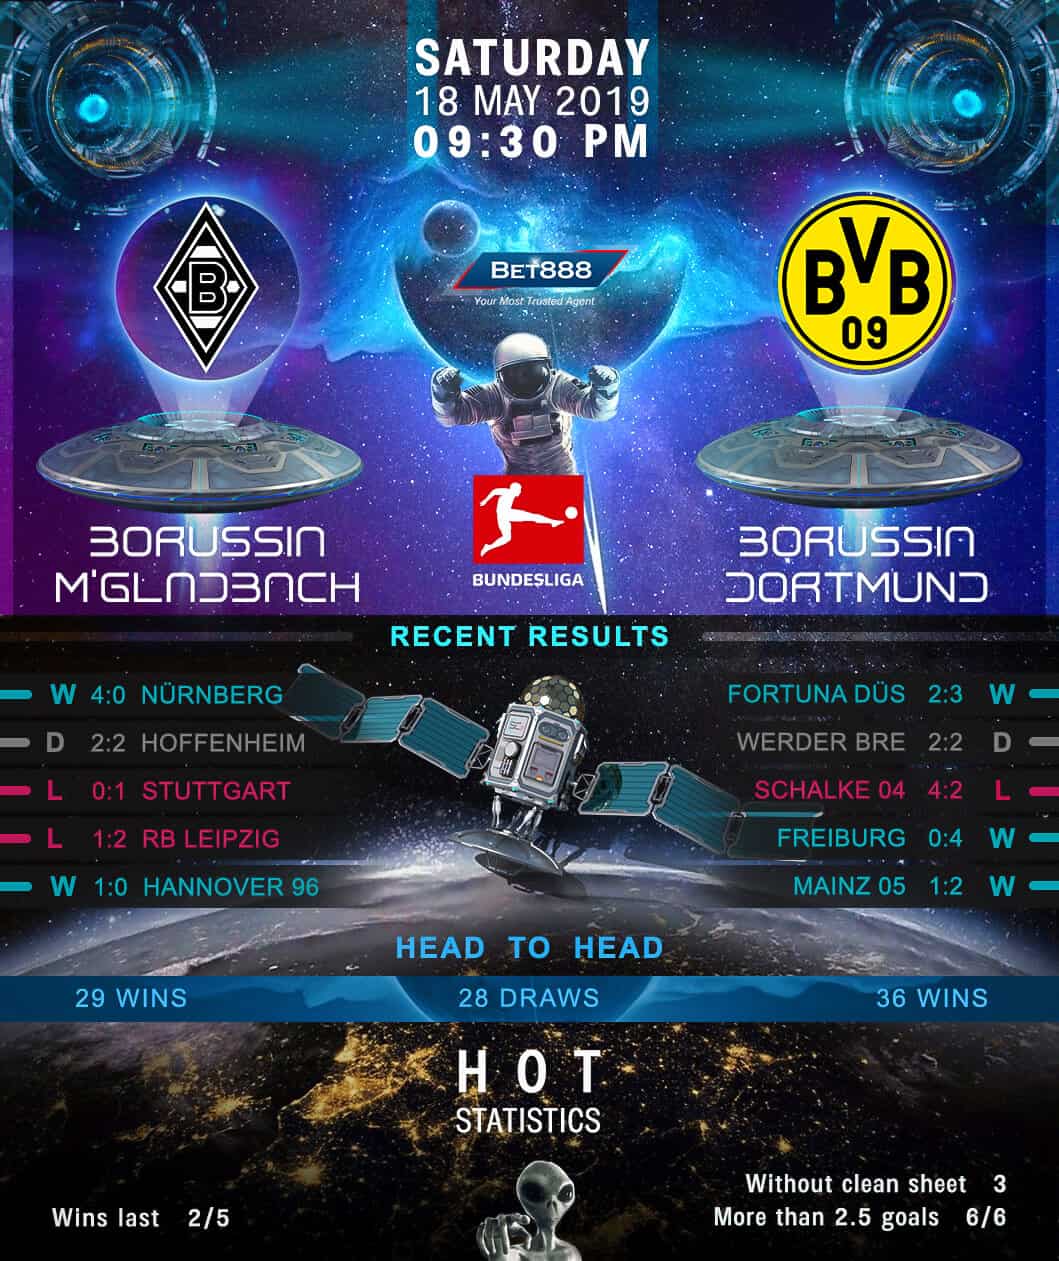 Borussia Monchengladbach vs Borussia Dortmund 18/05/19